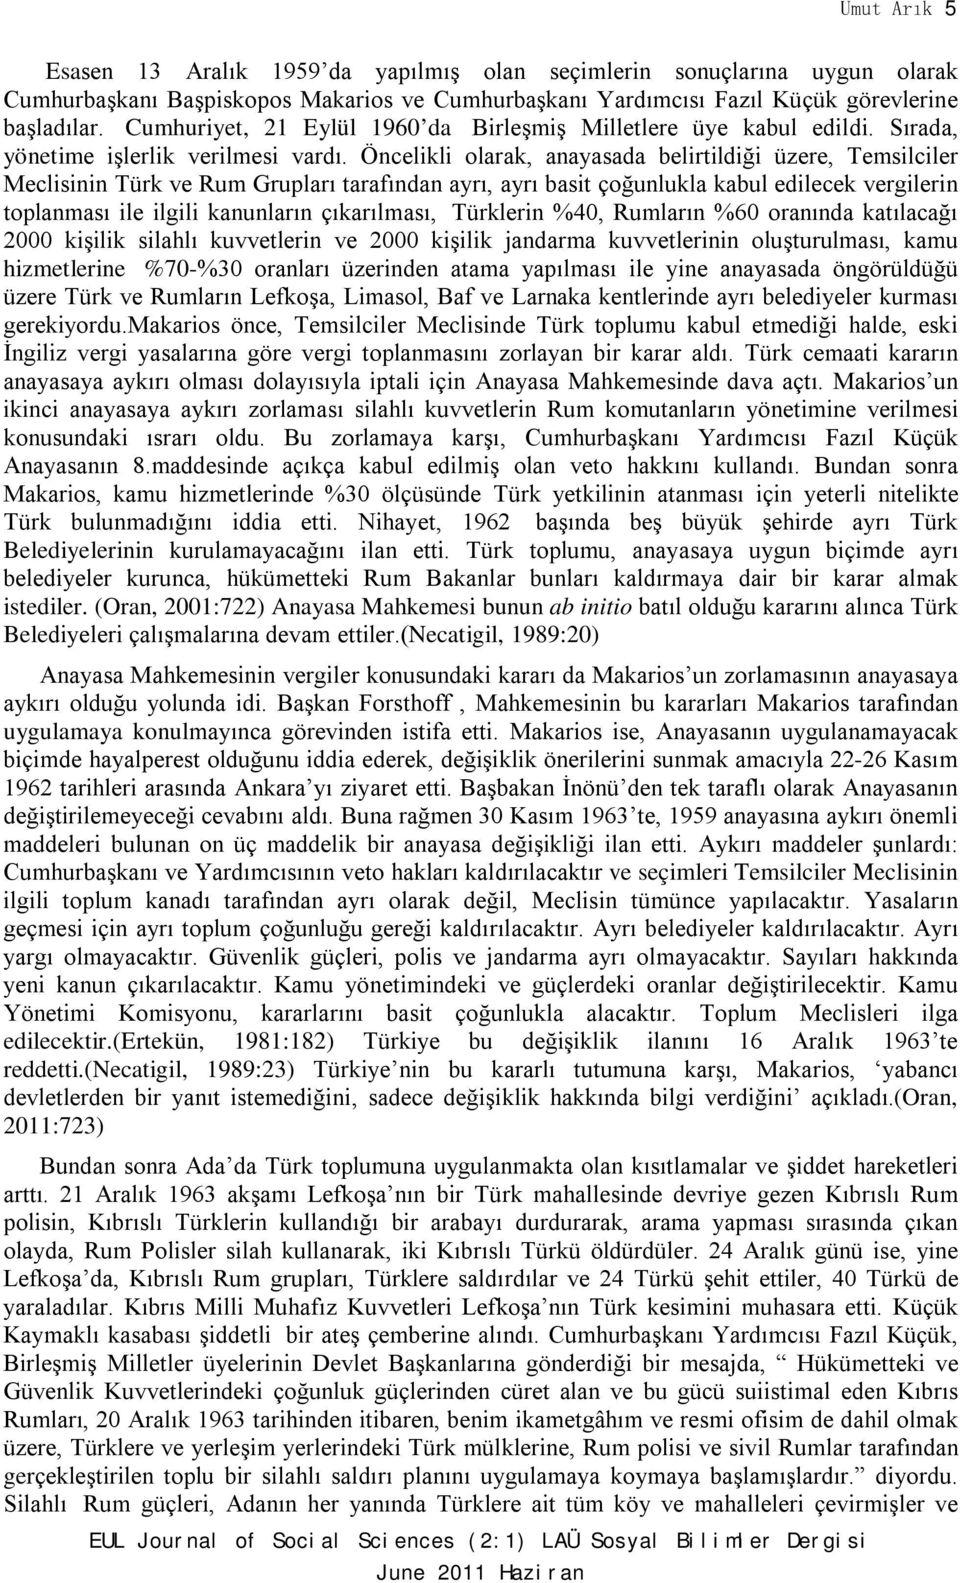 Öncelikli olarak, anayasada belirtildiği üzere, Temsilciler Meclisinin Türk ve Rum Grupları tarafından ayrı, ayrı basit çoğunlukla kabul edilecek vergilerin toplanması ile ilgili kanunların